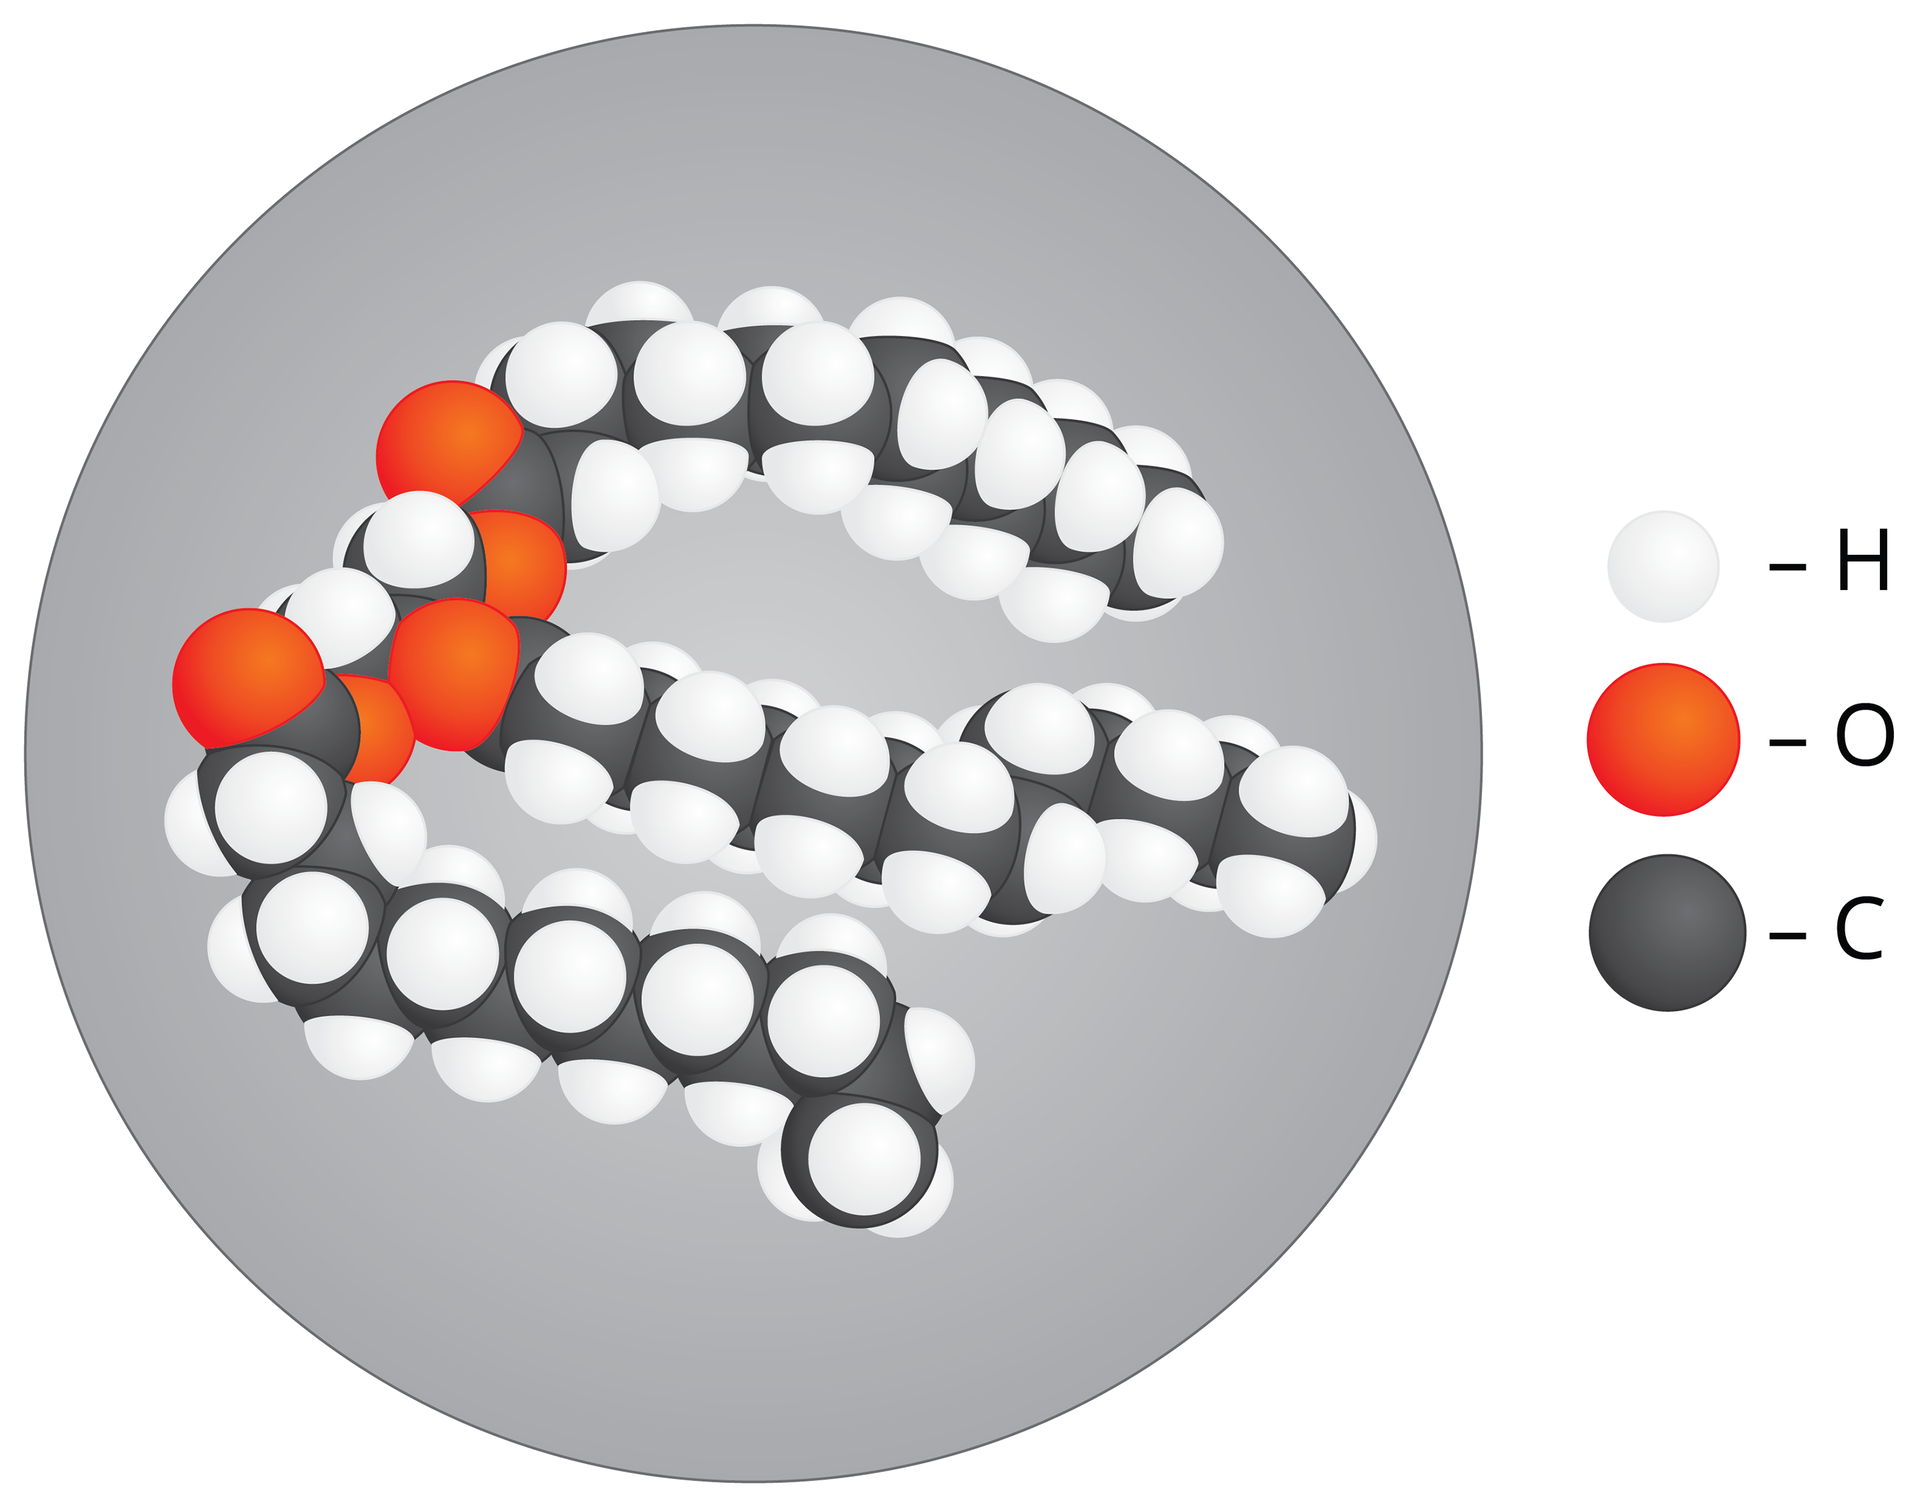 Ilustracja przedstawia model cząsteczki tłuszczu. Cząsteczka tłuszczu ma kształt trzech niemal równoległych długich walców zbudowanych z cząsteczek węgla. Na nich leżą liczne białe kulki wodoru i nieliczne czerwone kulki tlenu